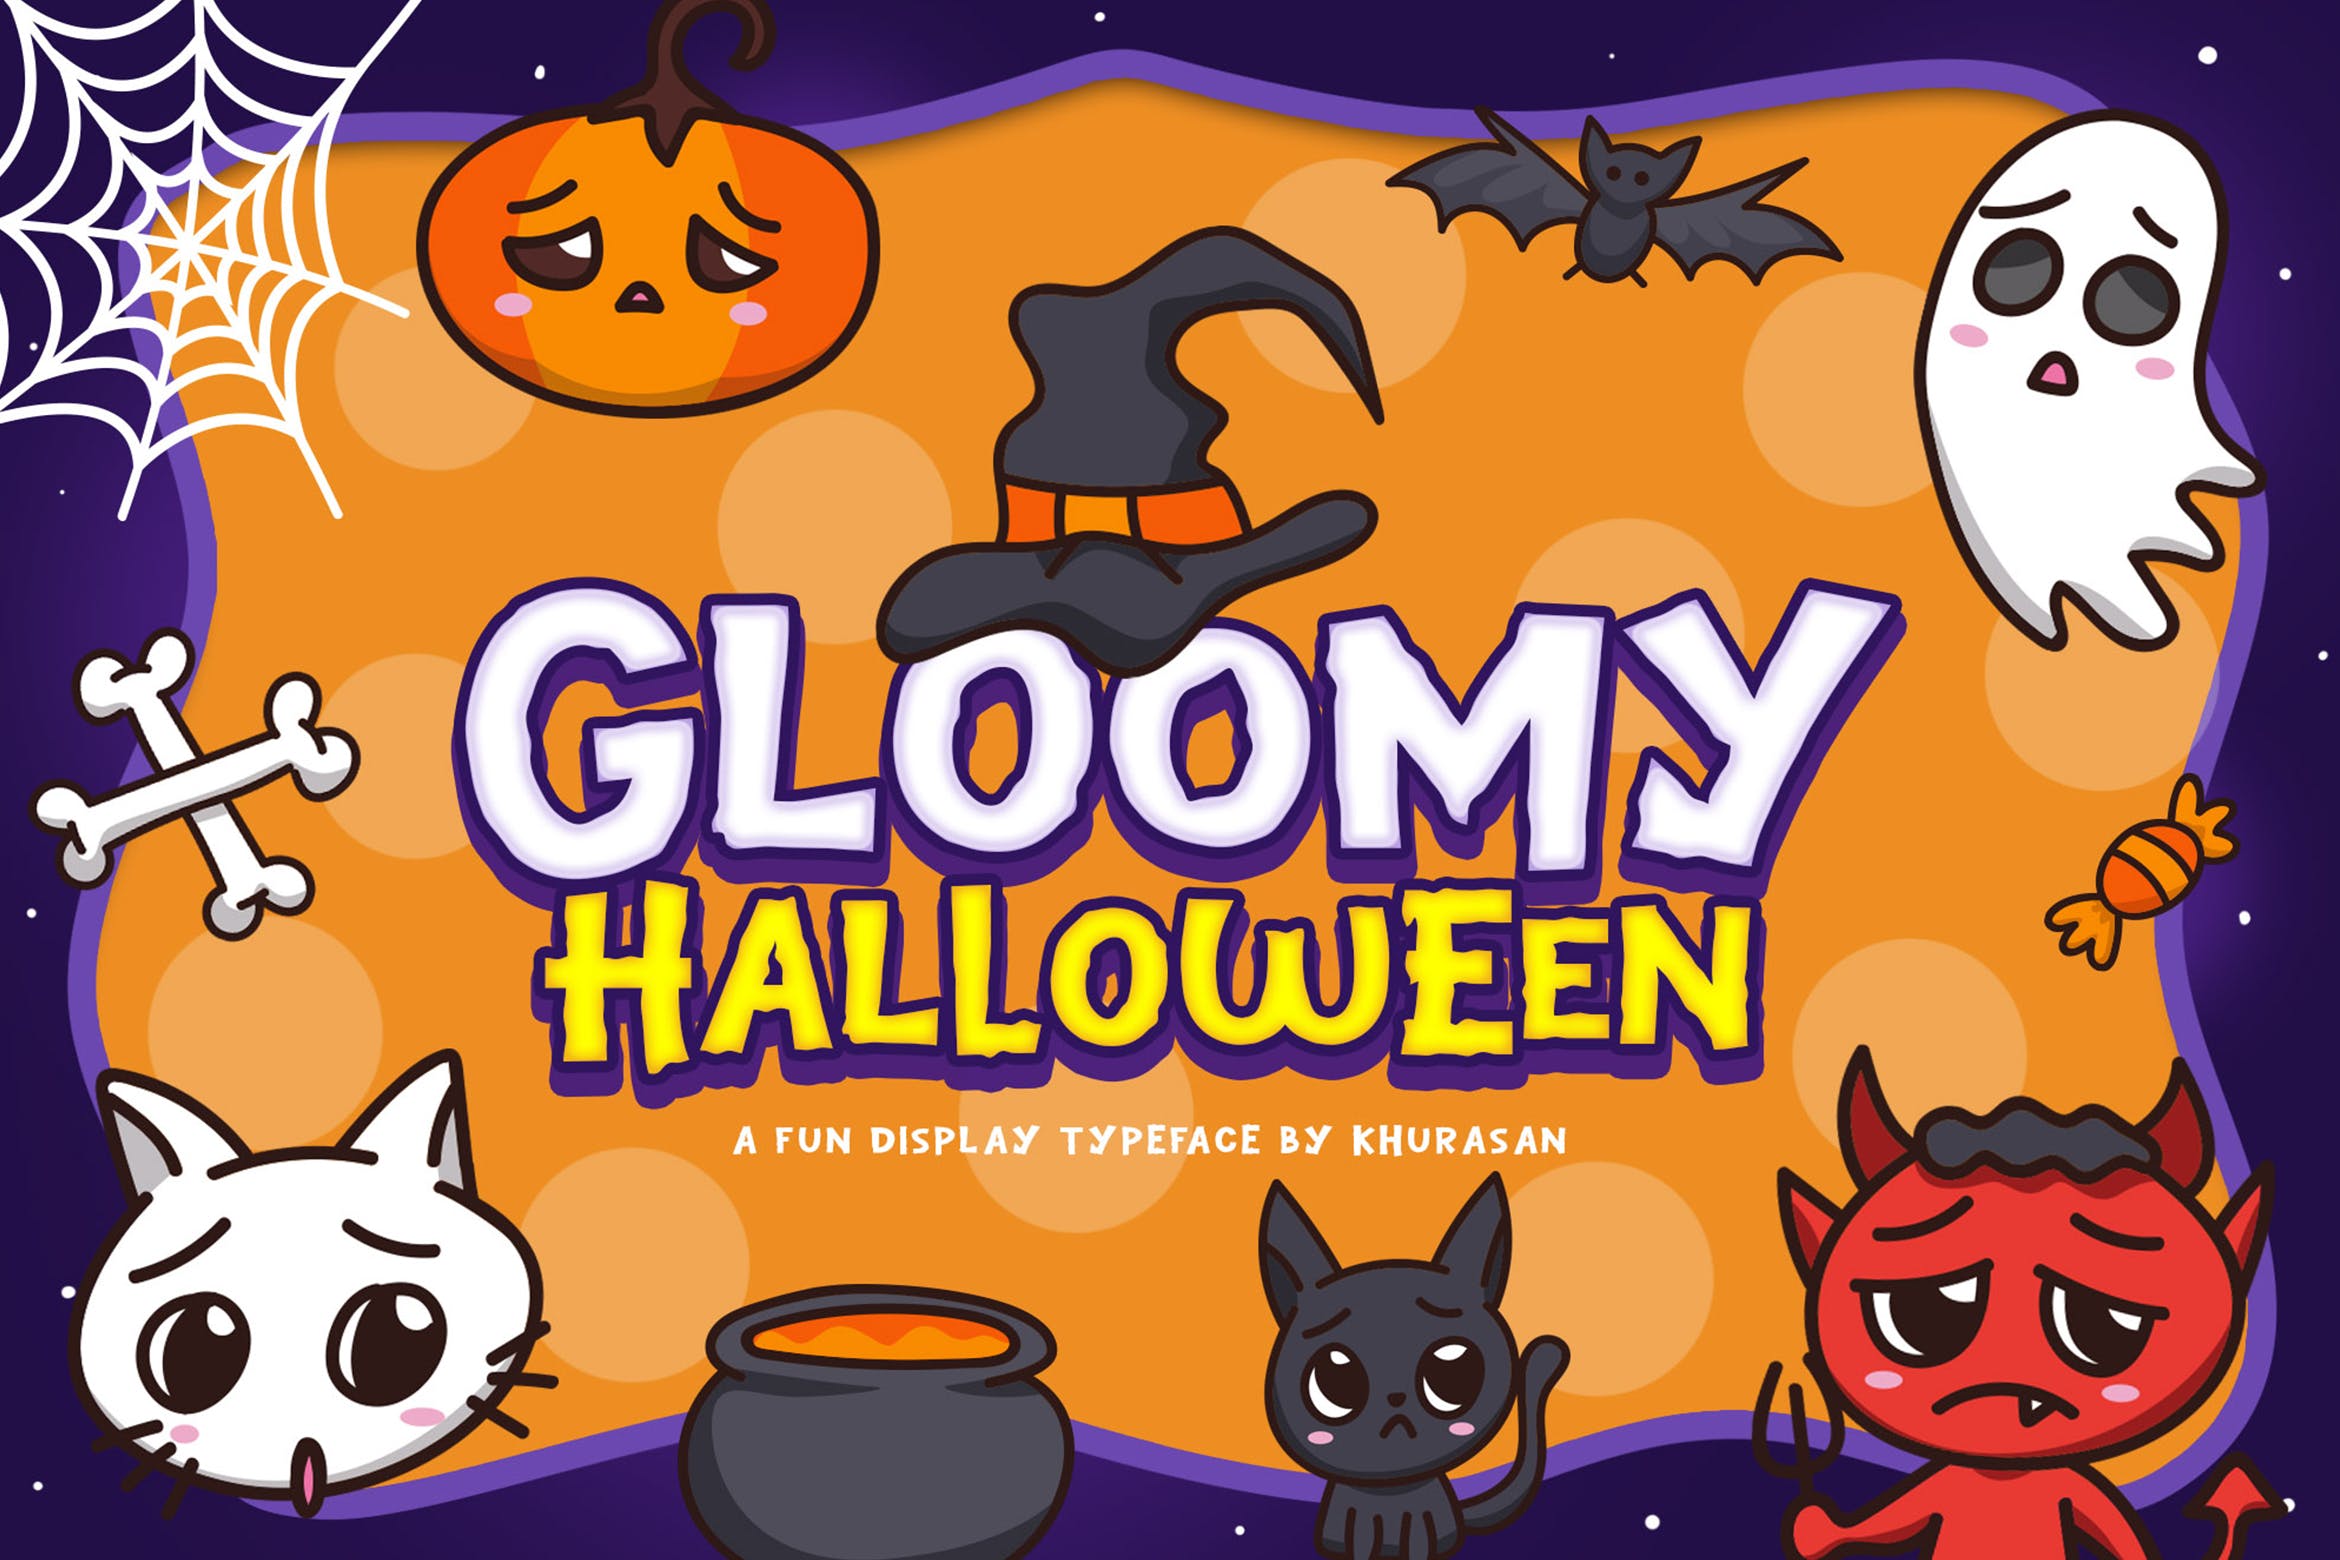 万圣节节日氛围英文艺术字体下载 Gloomy Halloween插图